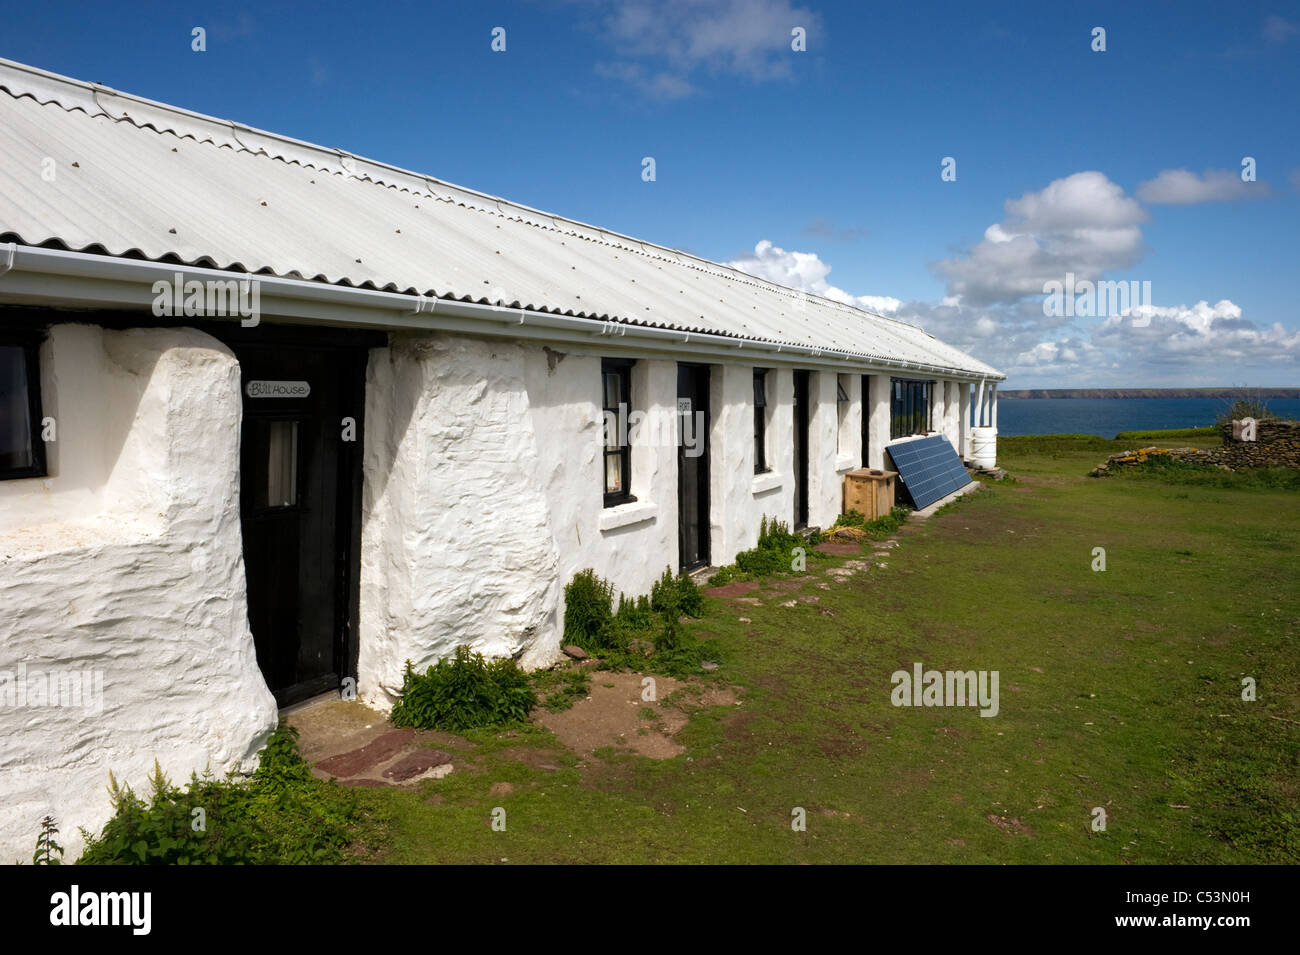 Hébergement sur l'île de vie Skokholm Pembrokeshire South Wales UK ; Skomer Island dans la distance. Banque D'Images